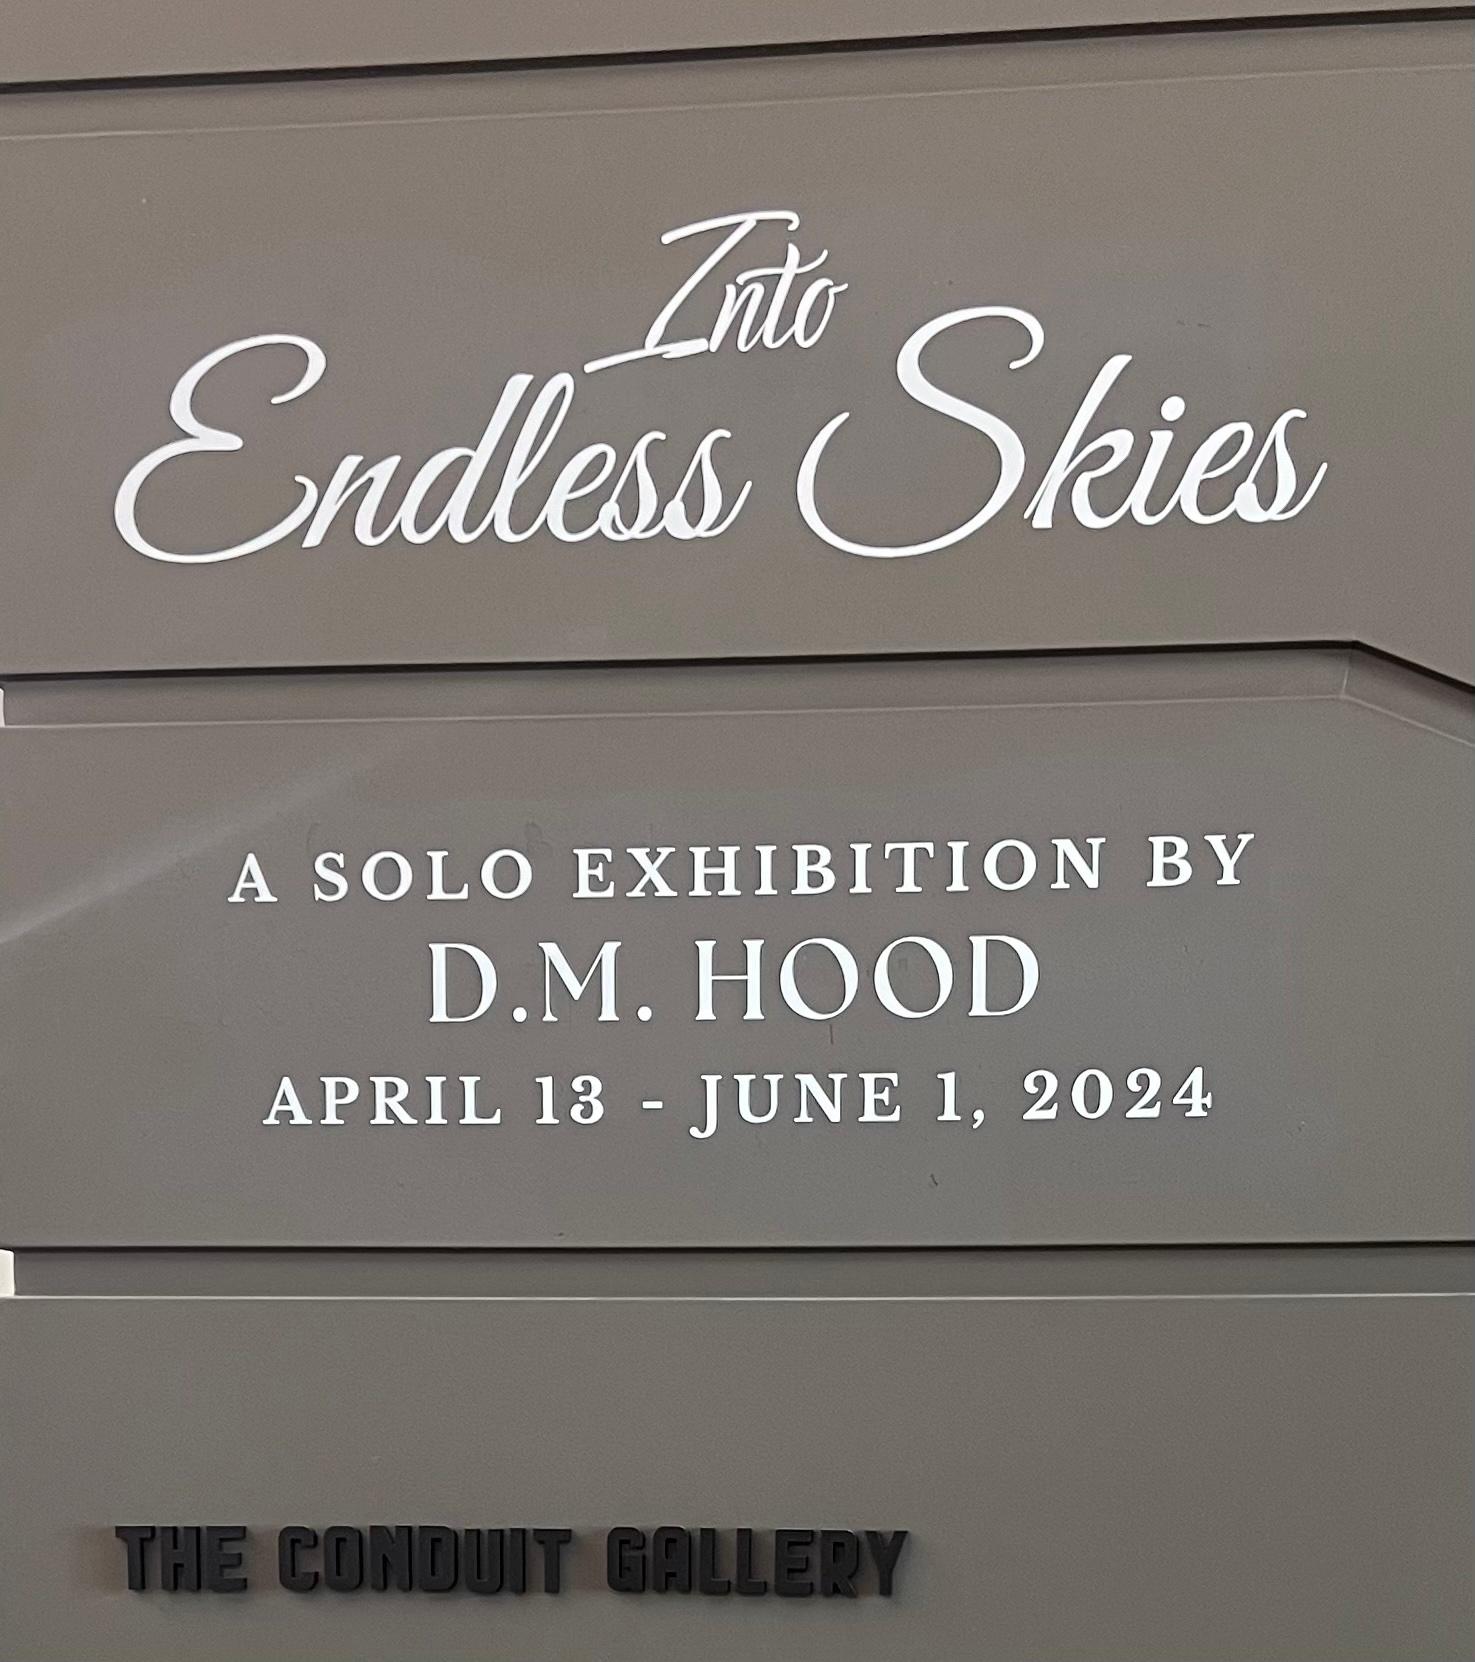 into endless skies Dennis Hood Steele Haus